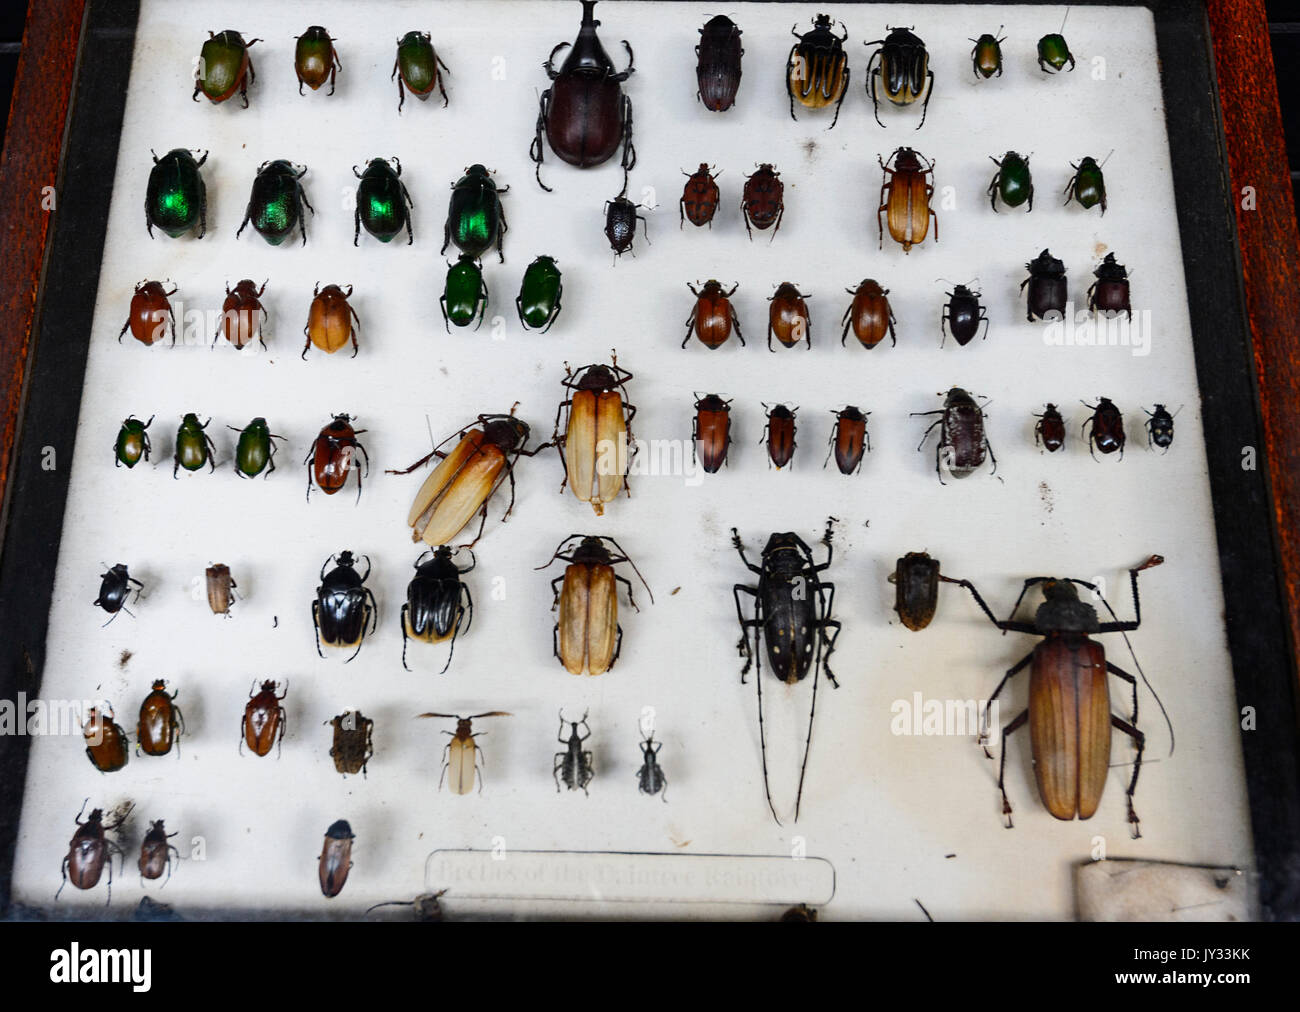 Une collection d'insectes, de l'Australie a effectué le tombé sur des bugs, de coléoptères, de Daintree Discovery Centre, l'extrême nord du Queensland, Australie, Queensland, FNQ Banque D'Images